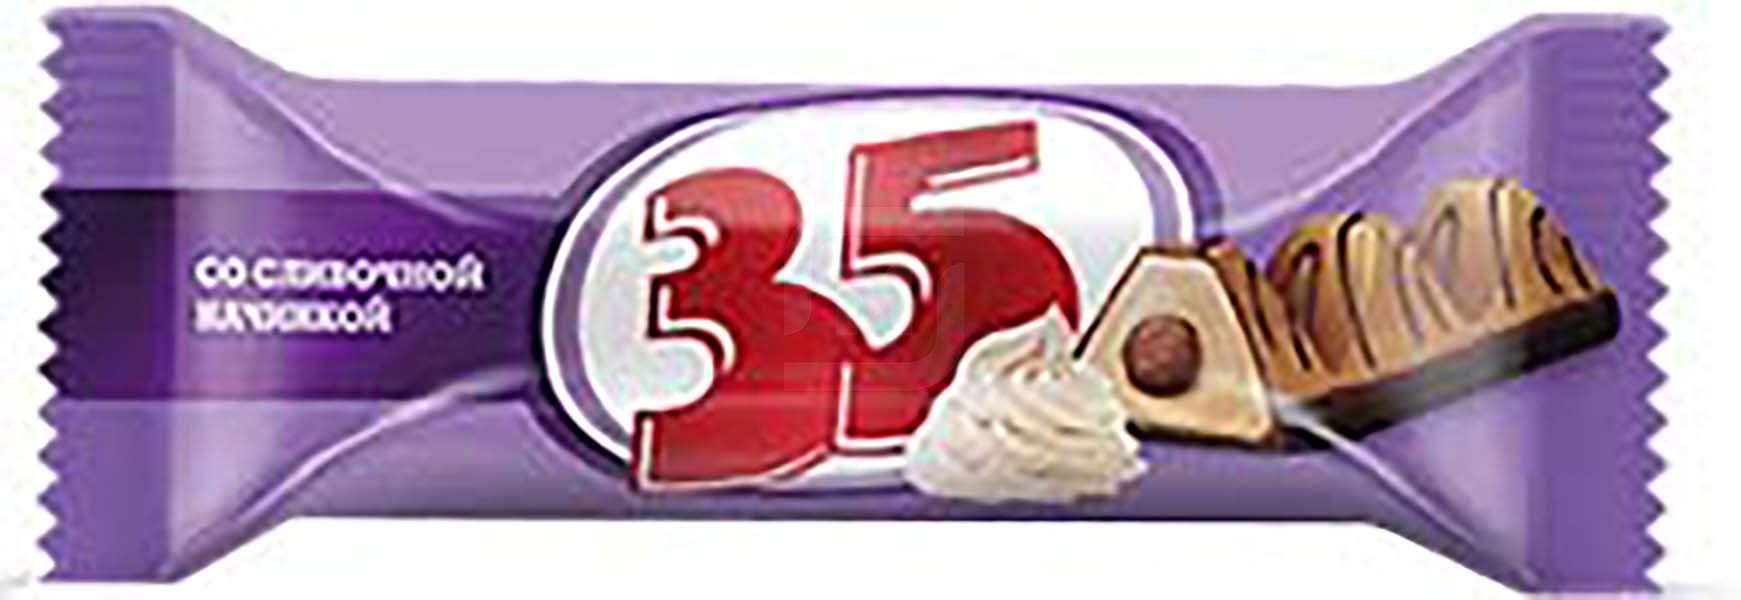 Шоколадные конфеты 35 со сливочной начинкой +-200 г